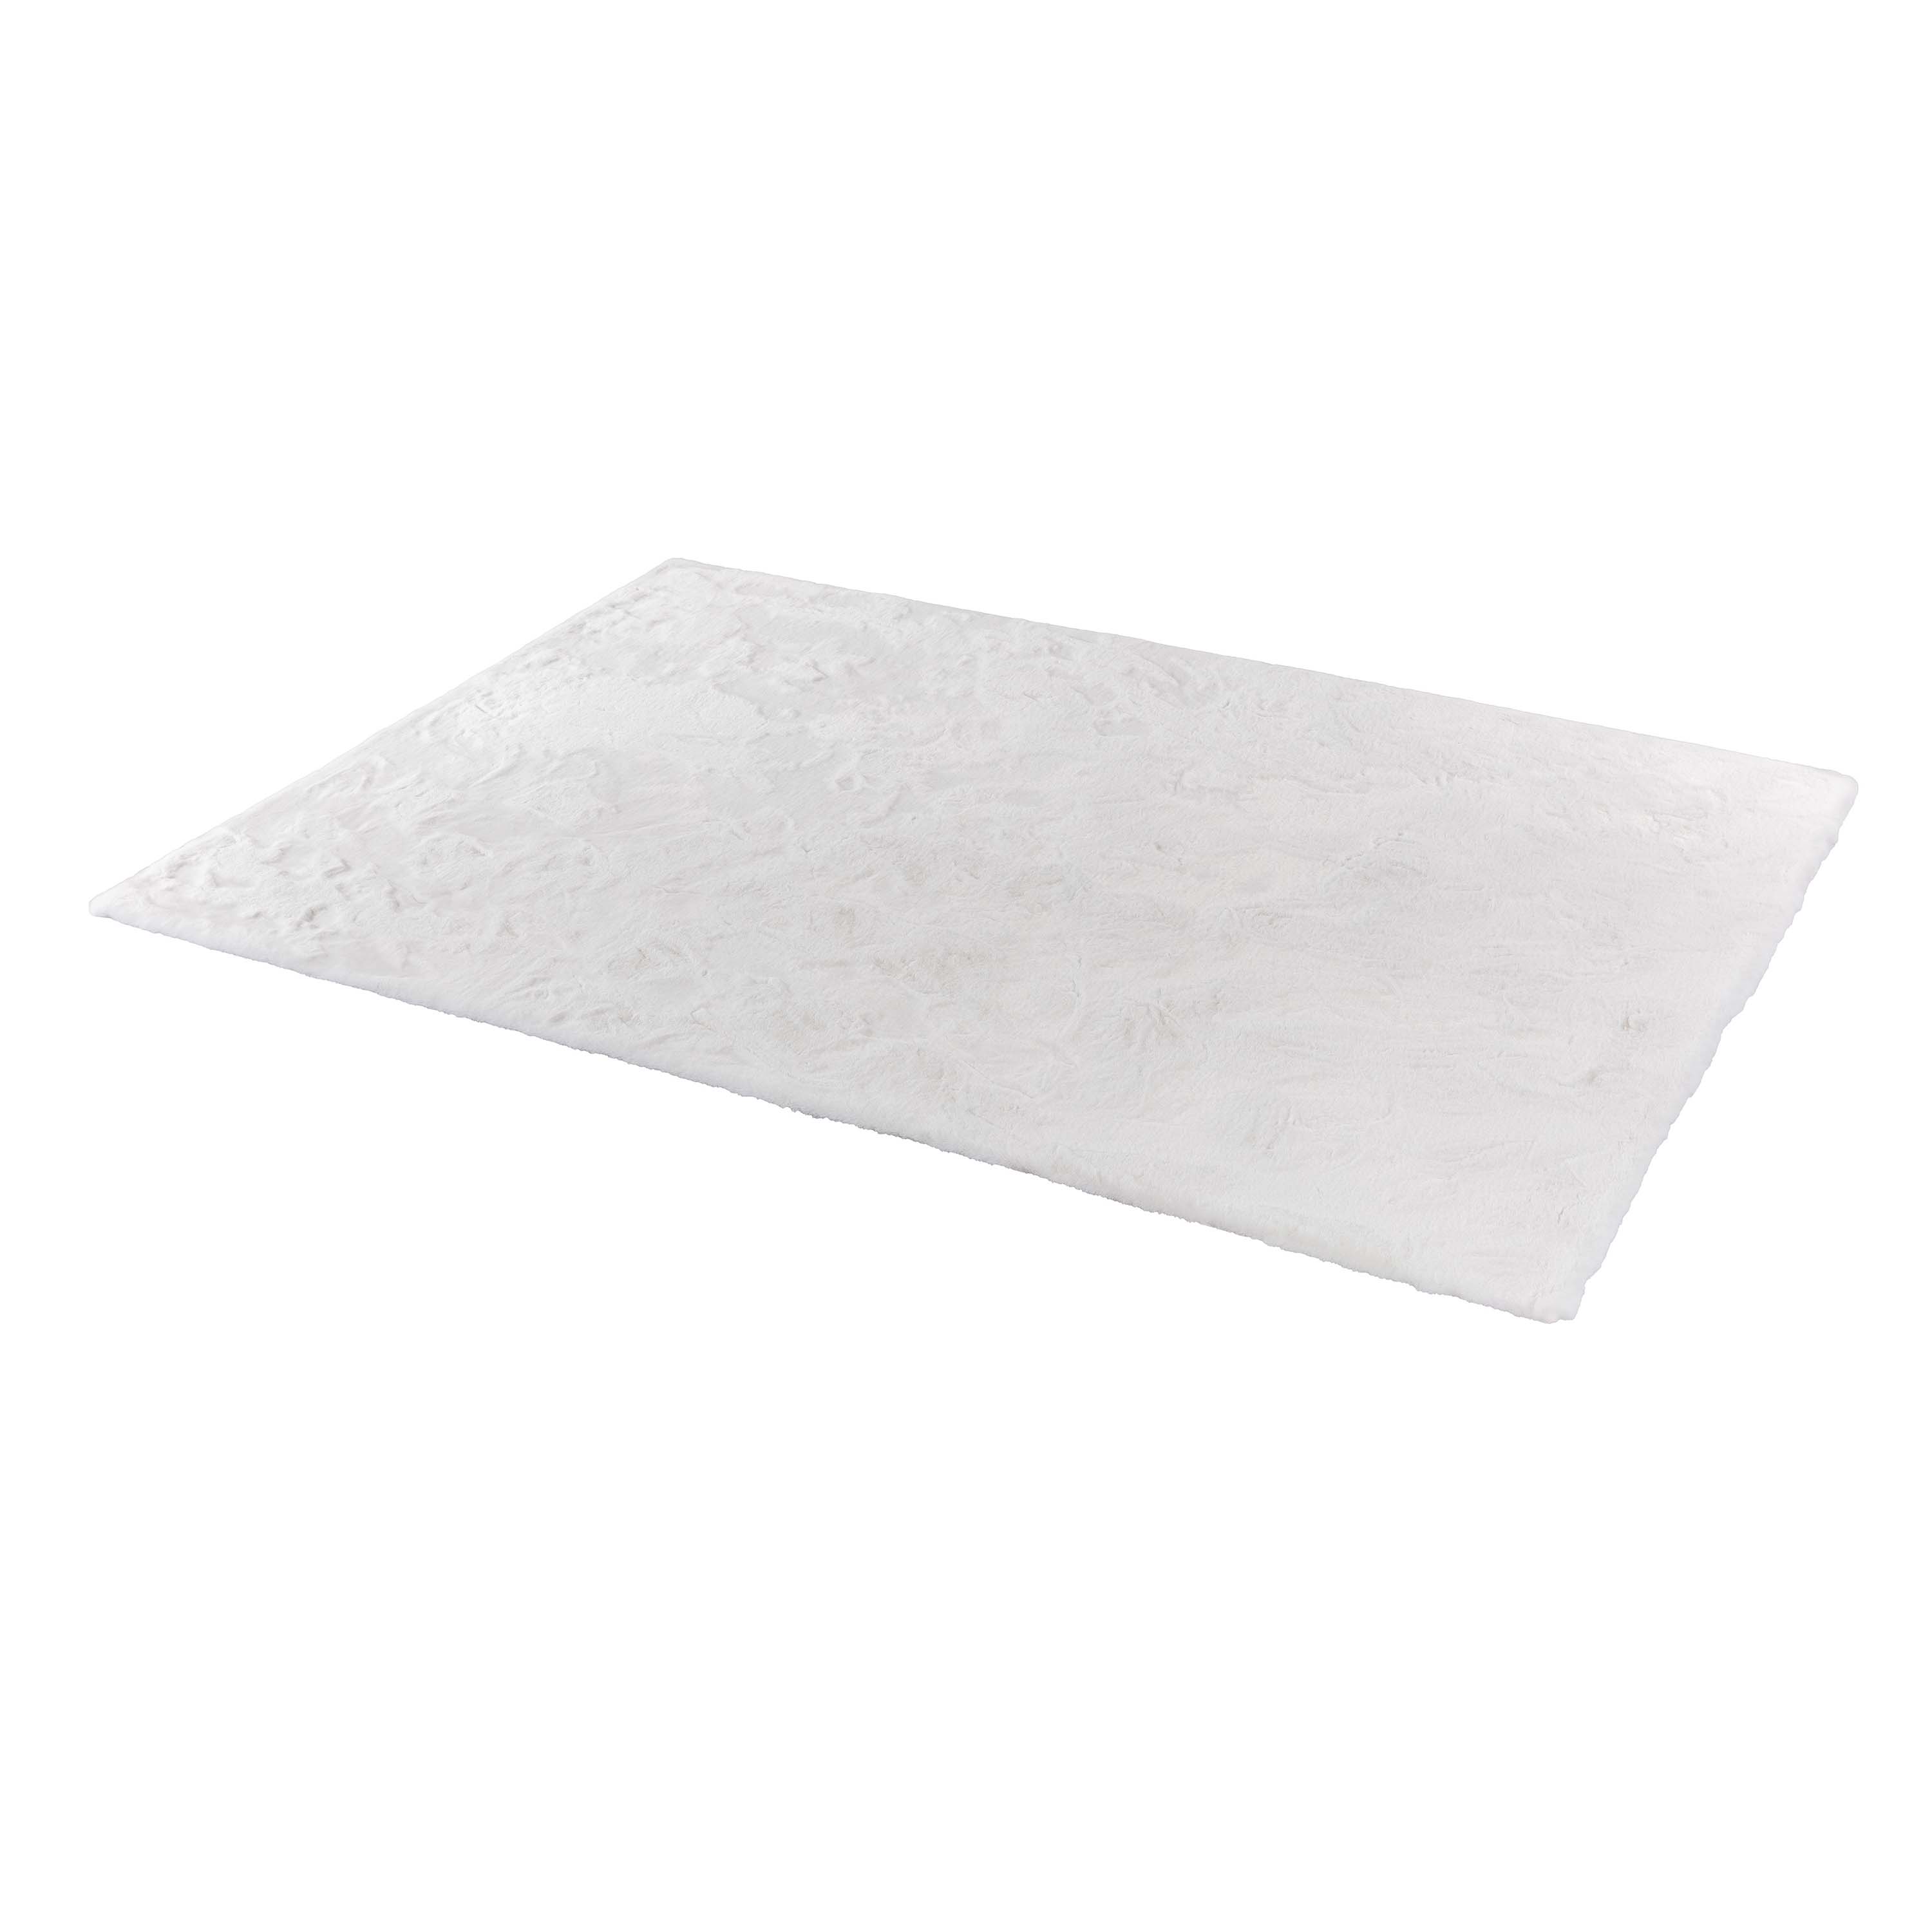 Schöner Wohnen Kollektion Teppich Tender 120x180 cm Weiß